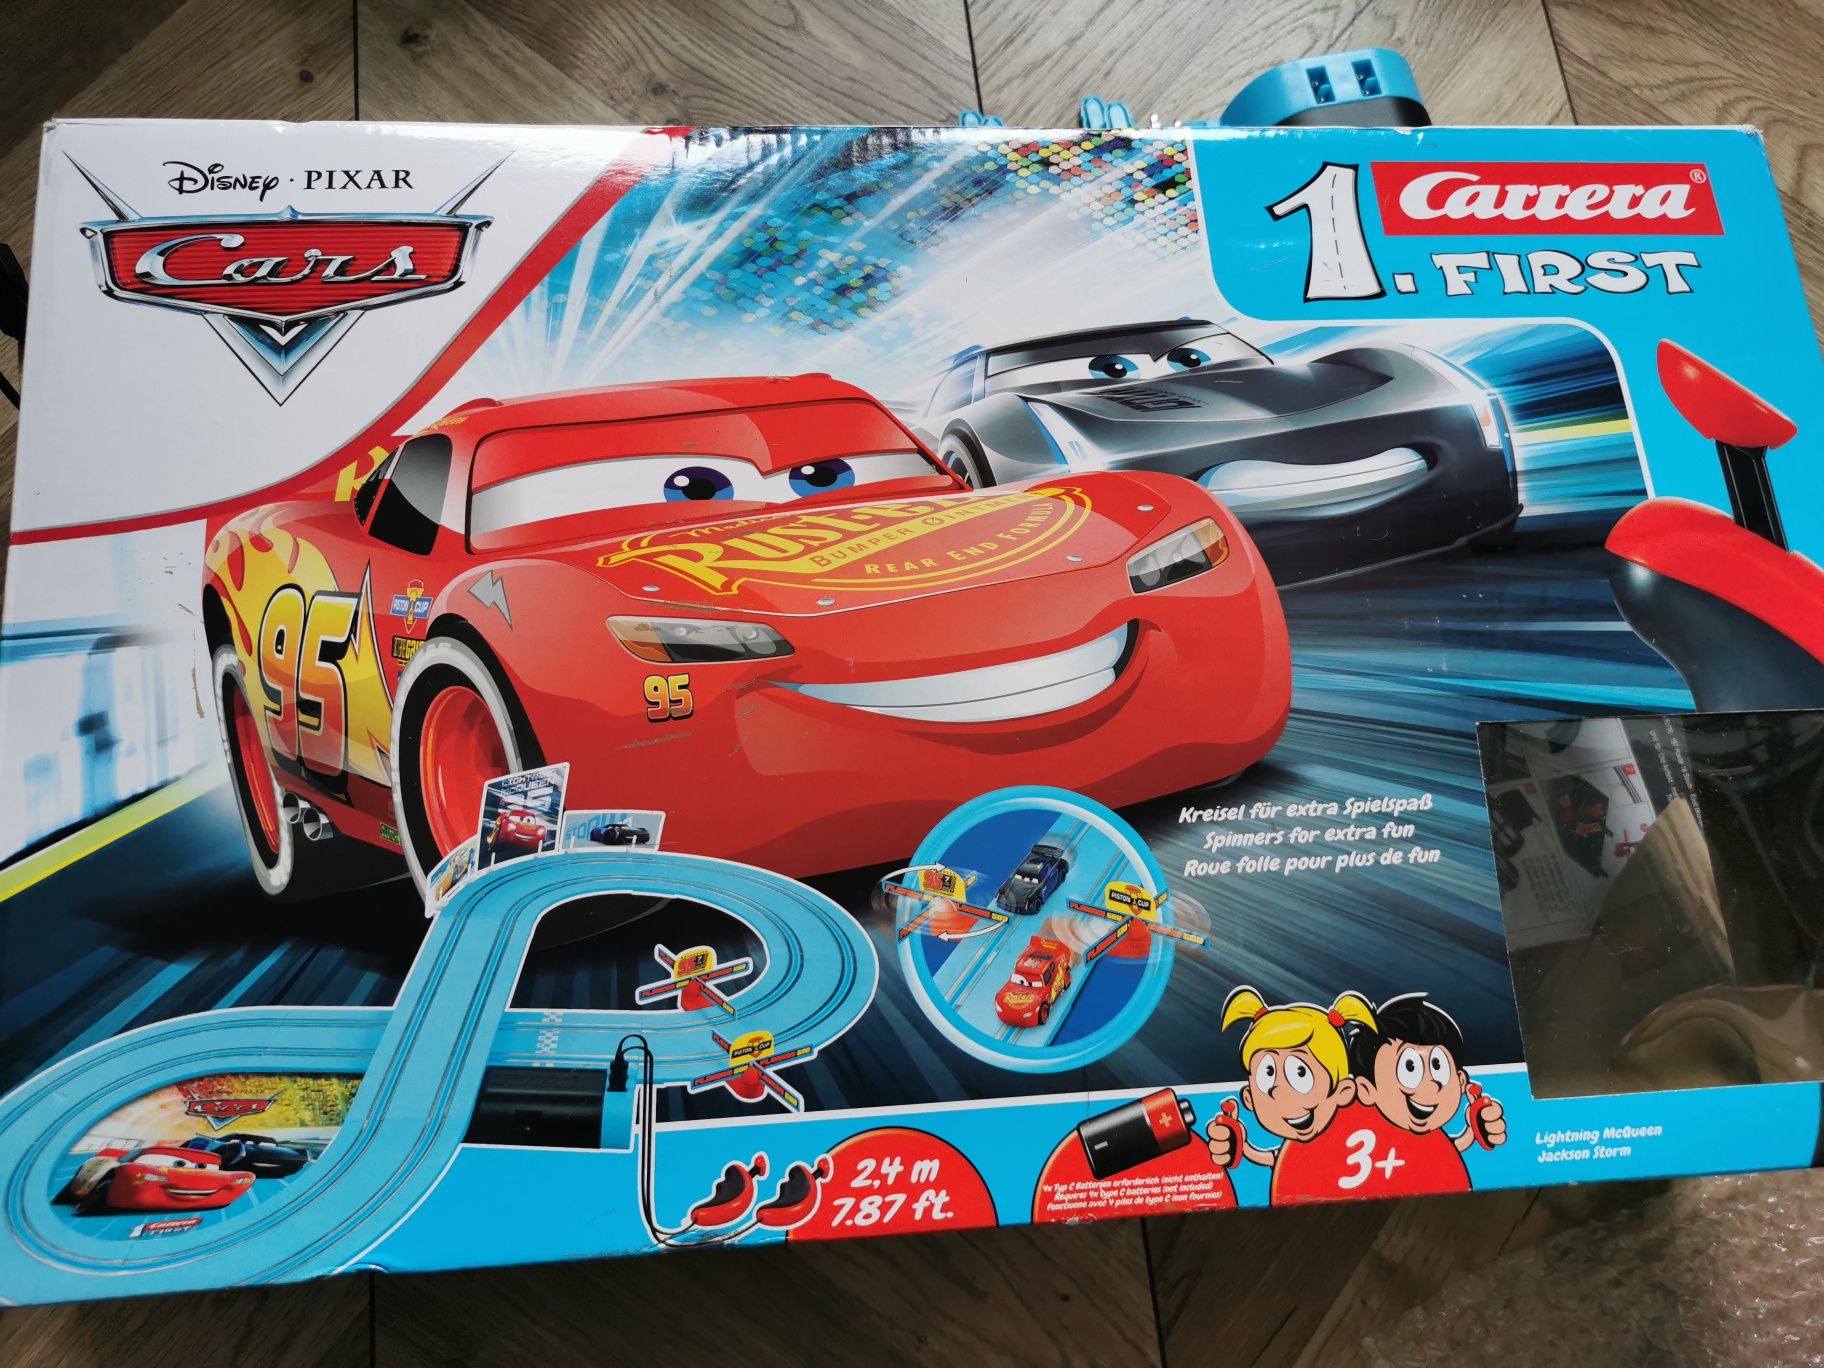 Carrera 1. First - Disney Pixar Cars Tor wyścigowy Auta Cars Powe 2,4m